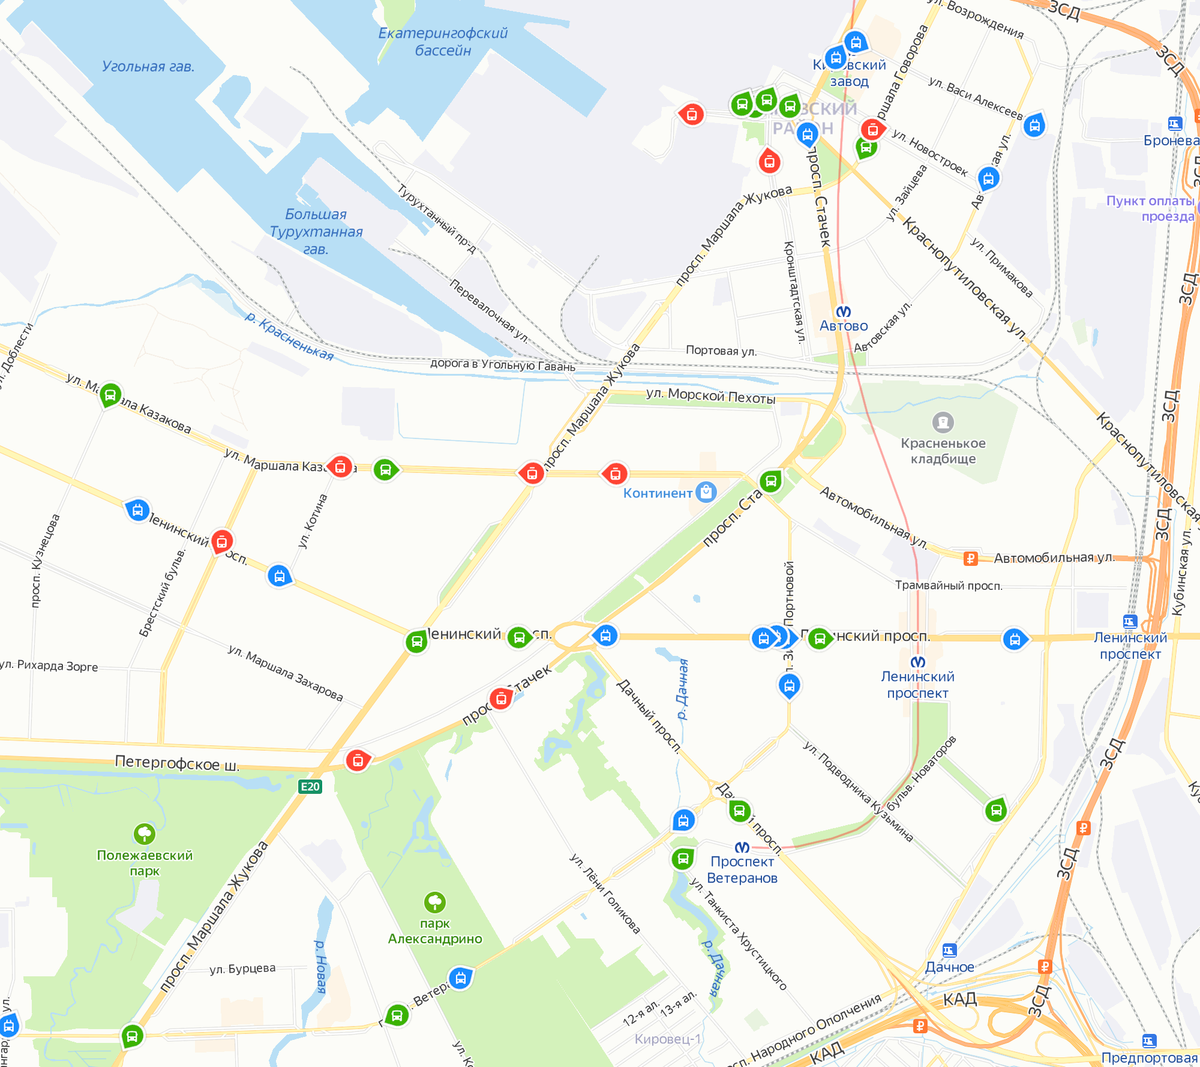 Общественный транспорт на карте. Синие — троллейбусы, красные — трамваи, зеленые — автобусы. Источник: «Яндекс-карты»